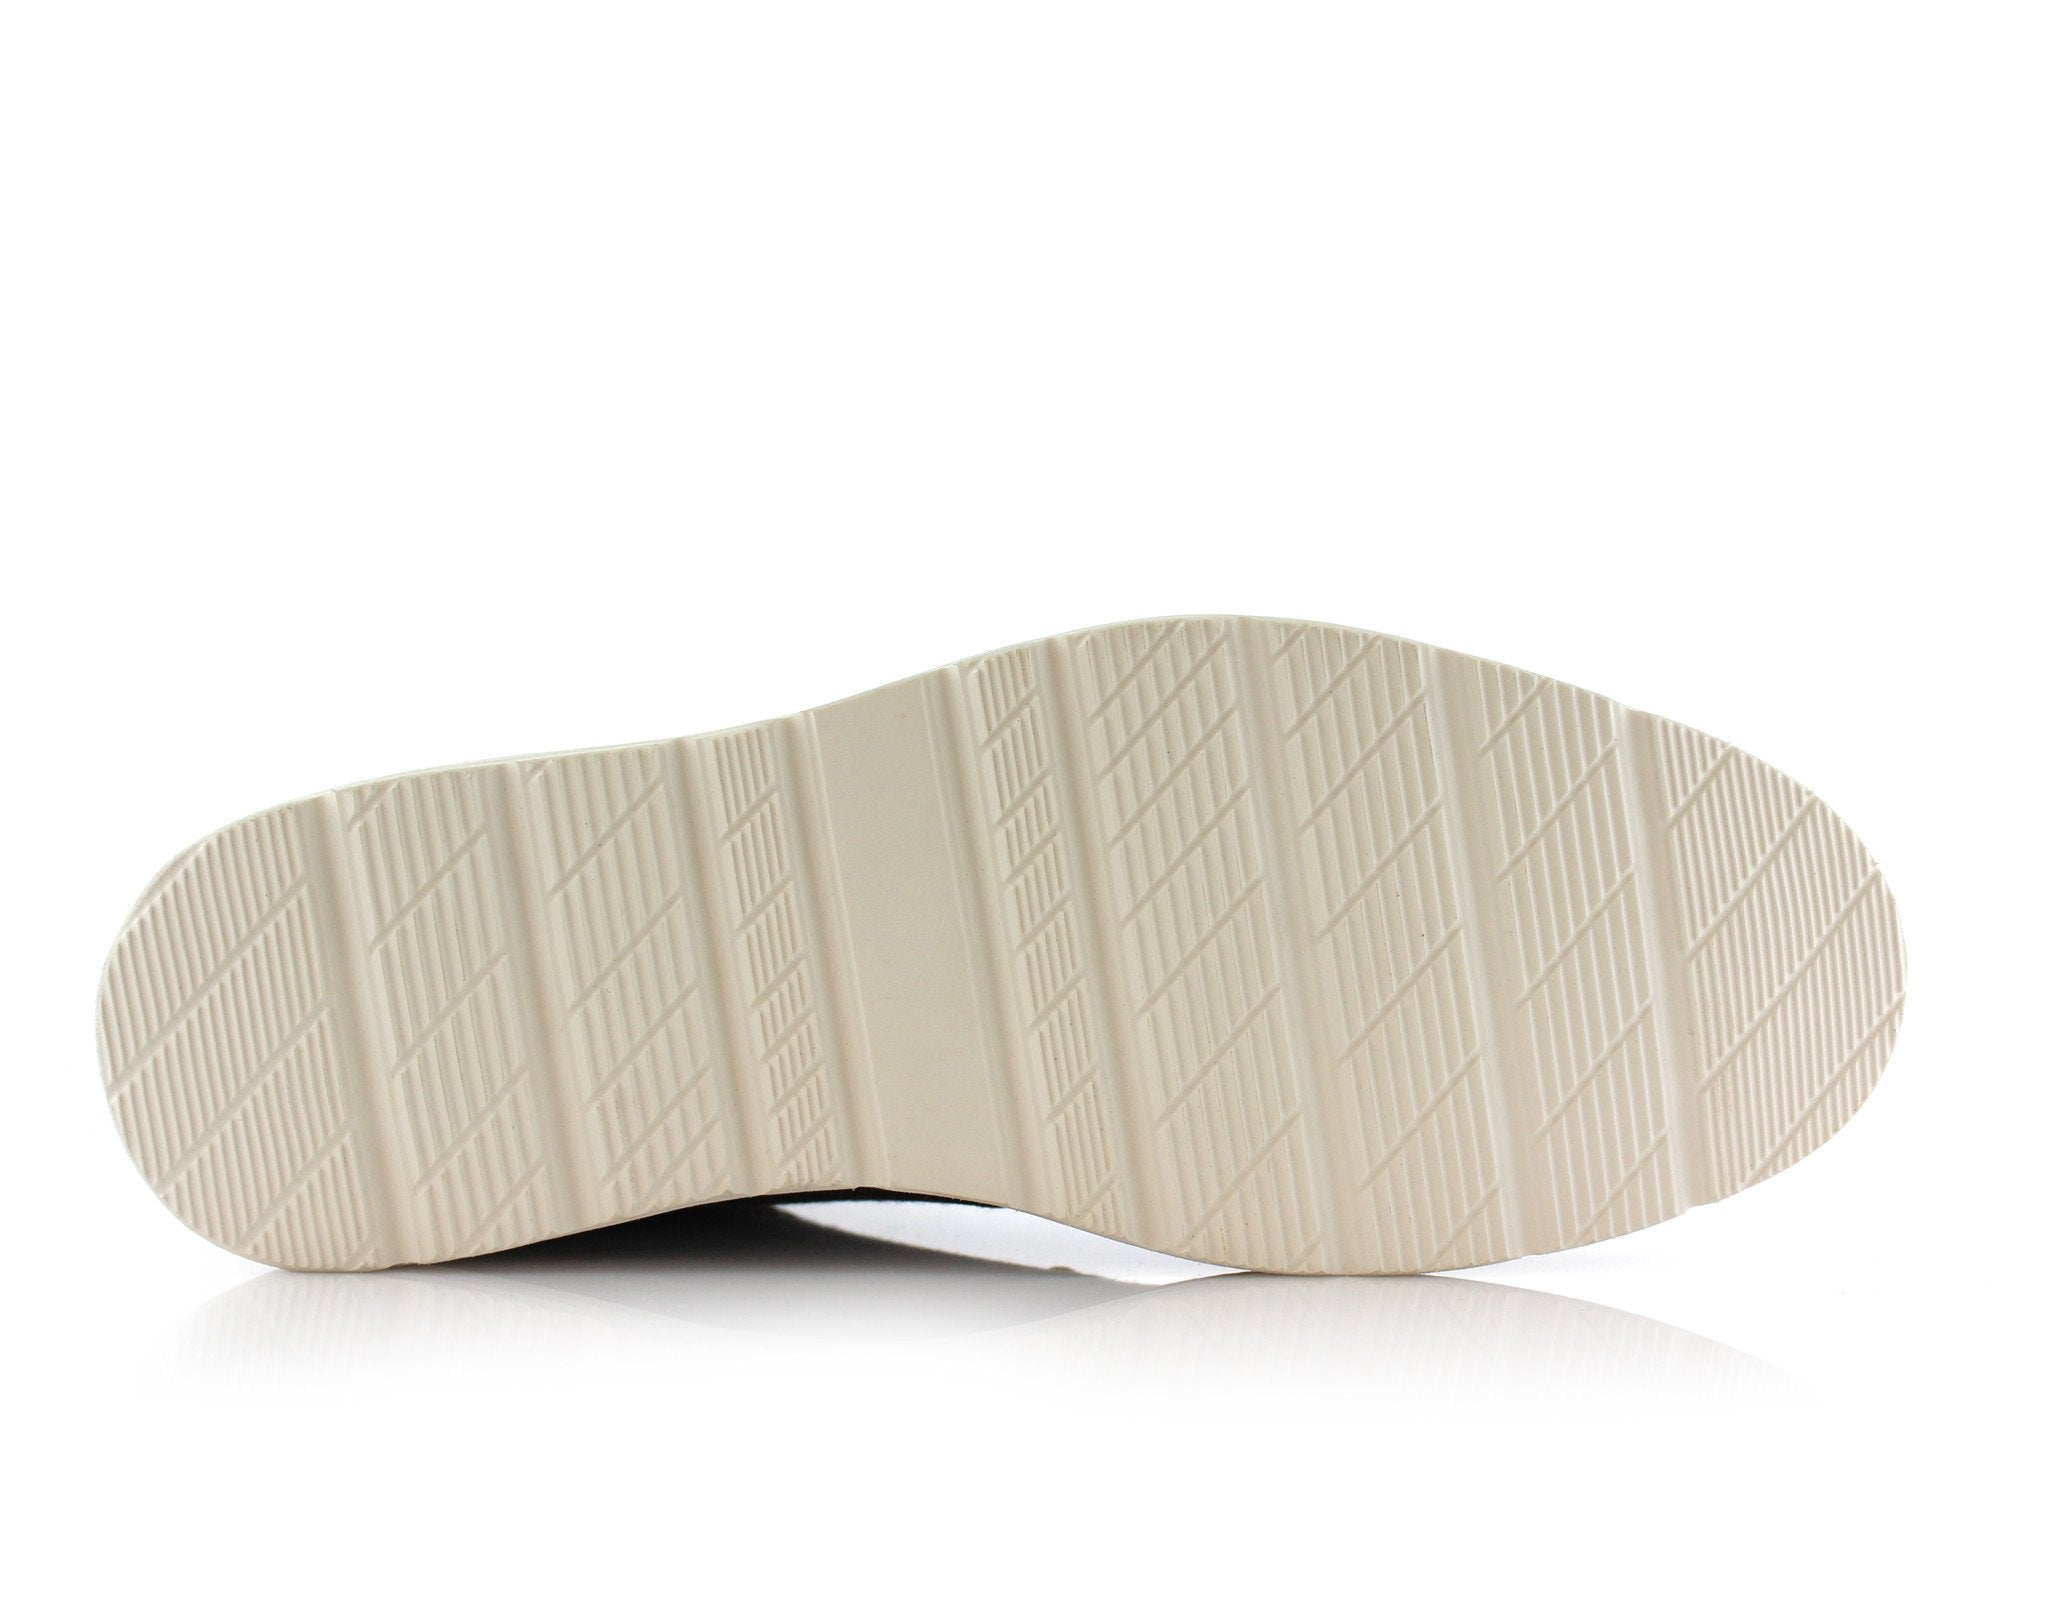 Two-Toned Chukka Sneaker Boots | Owen by Ferro Aldo | Conal Footwear | Bottom Sole Angle View